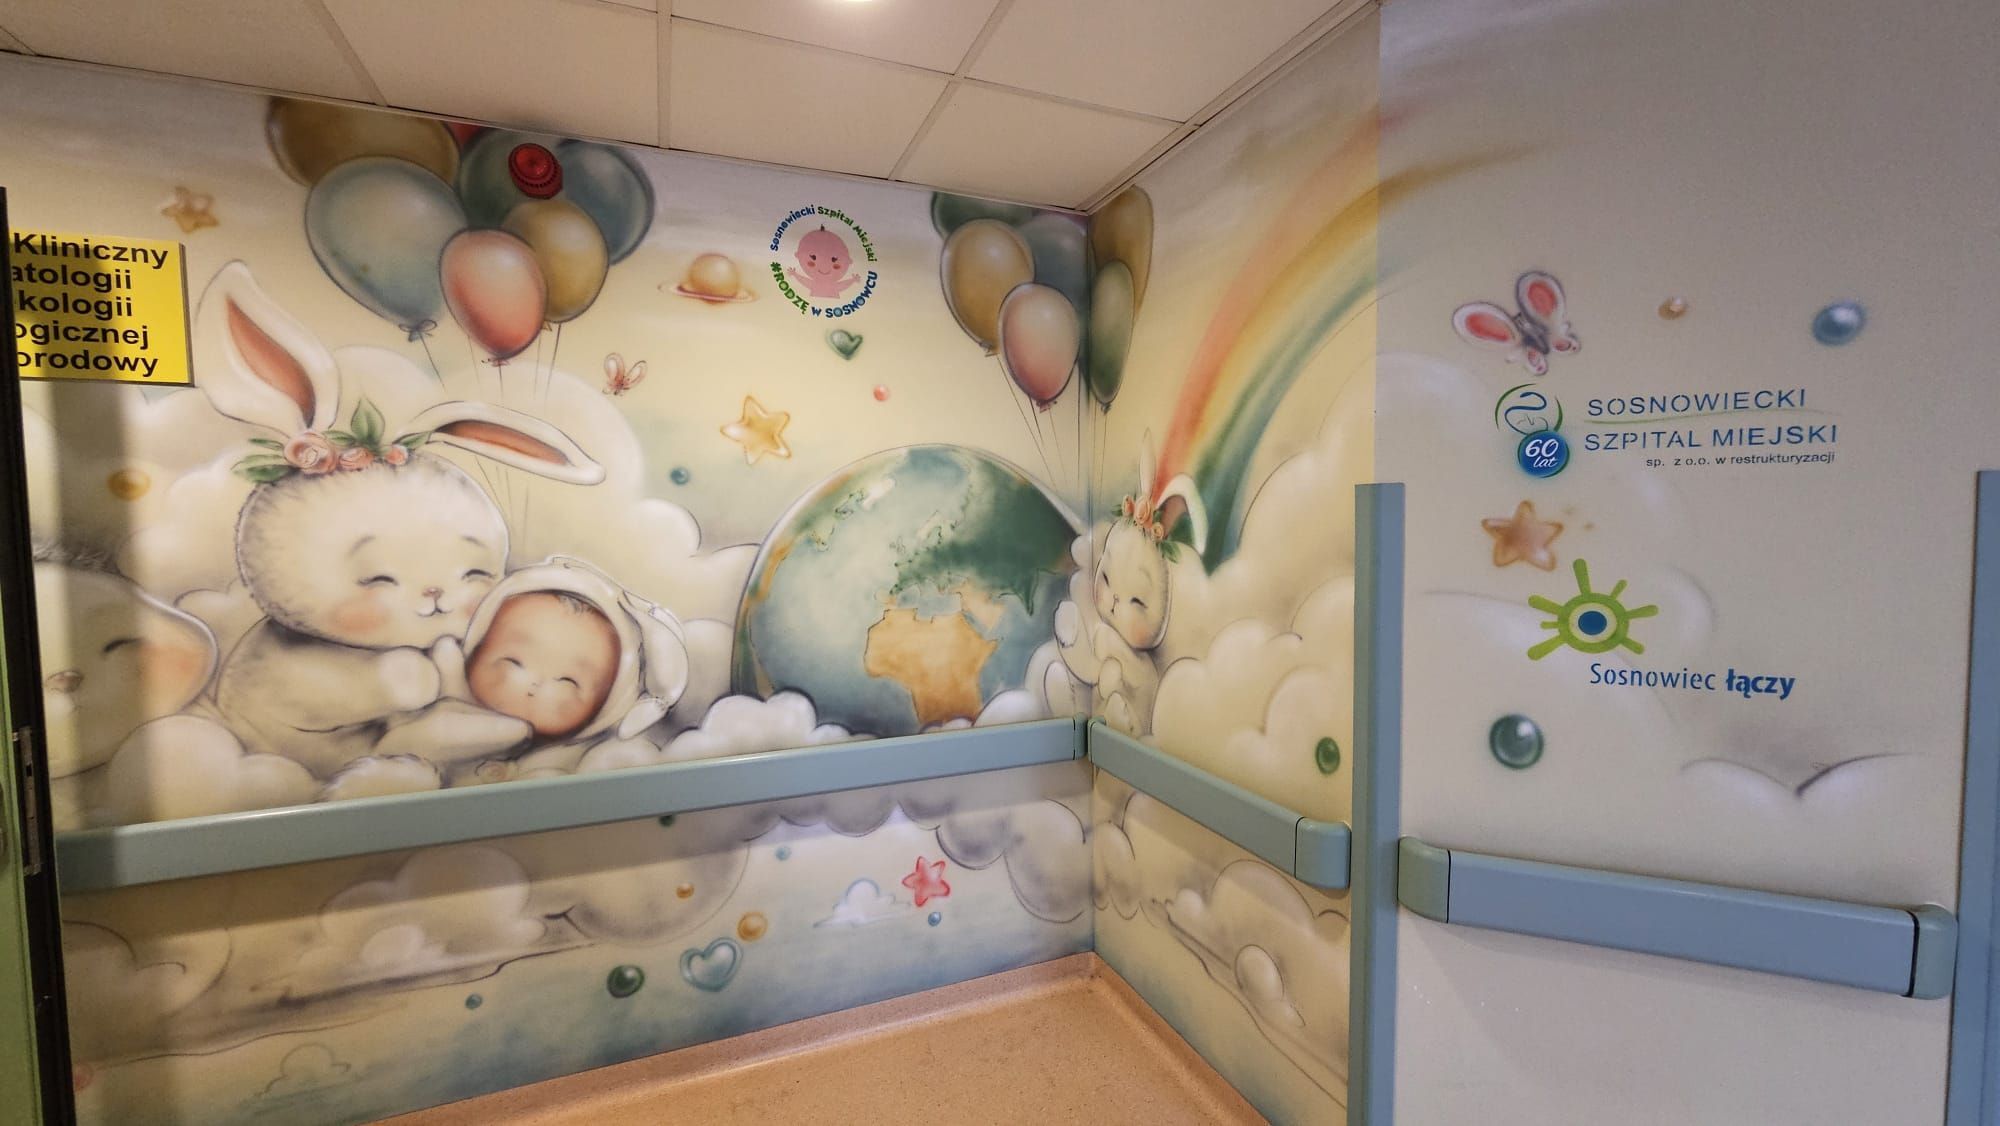 Porodówkowy mural Sosnowiecki Szpital Miejski